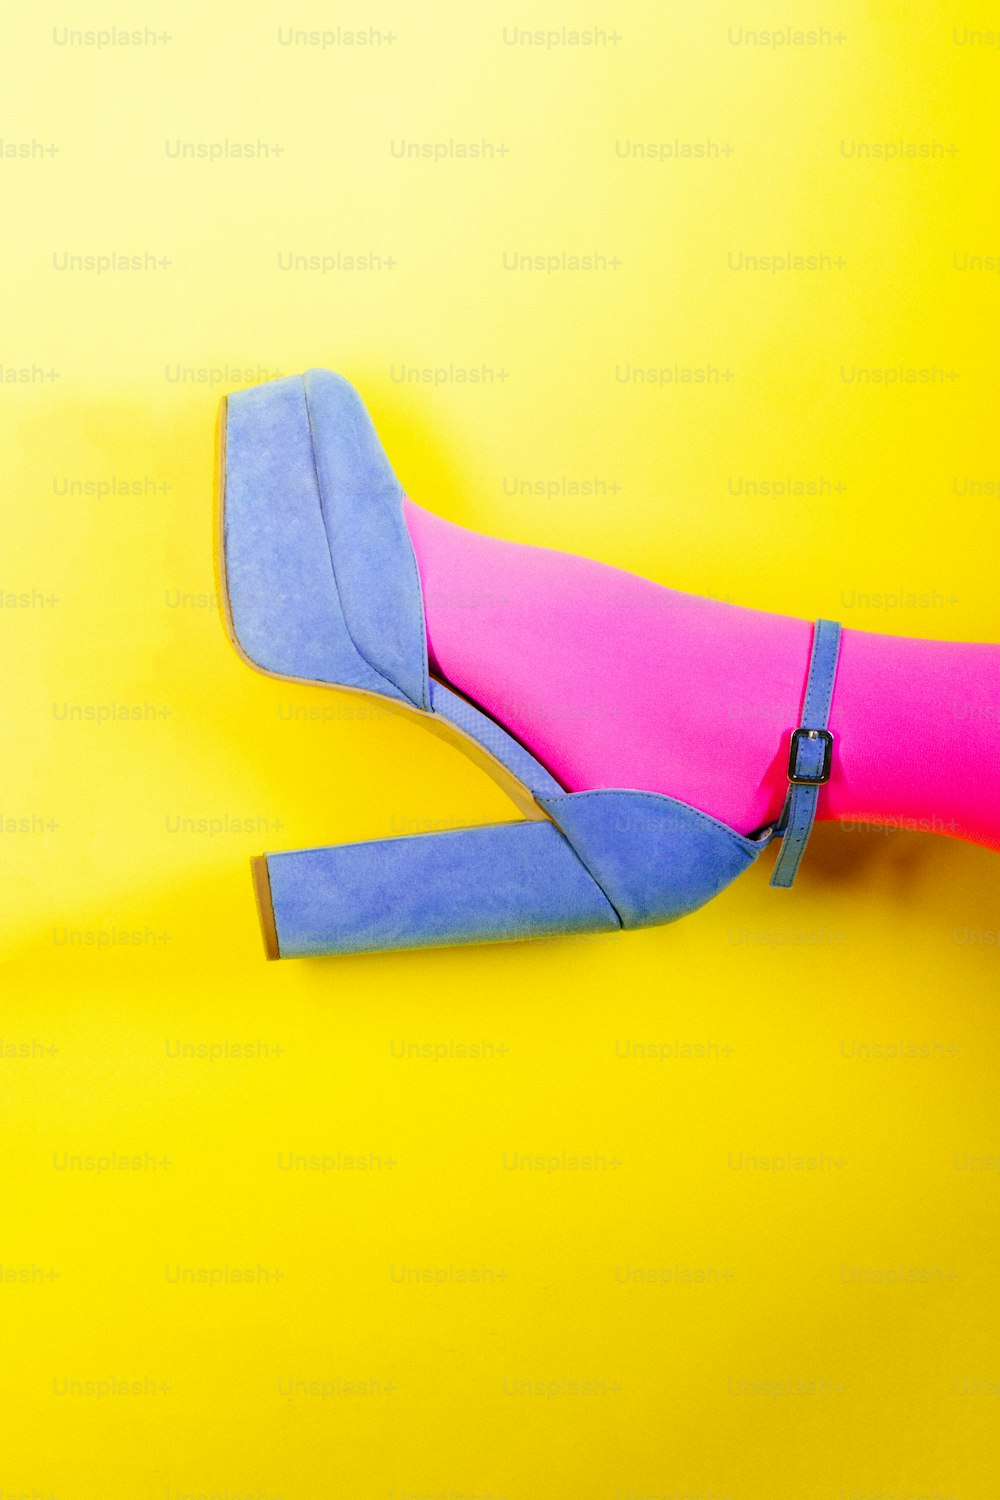 un paio di scarpe blu e rosa su sfondo giallo